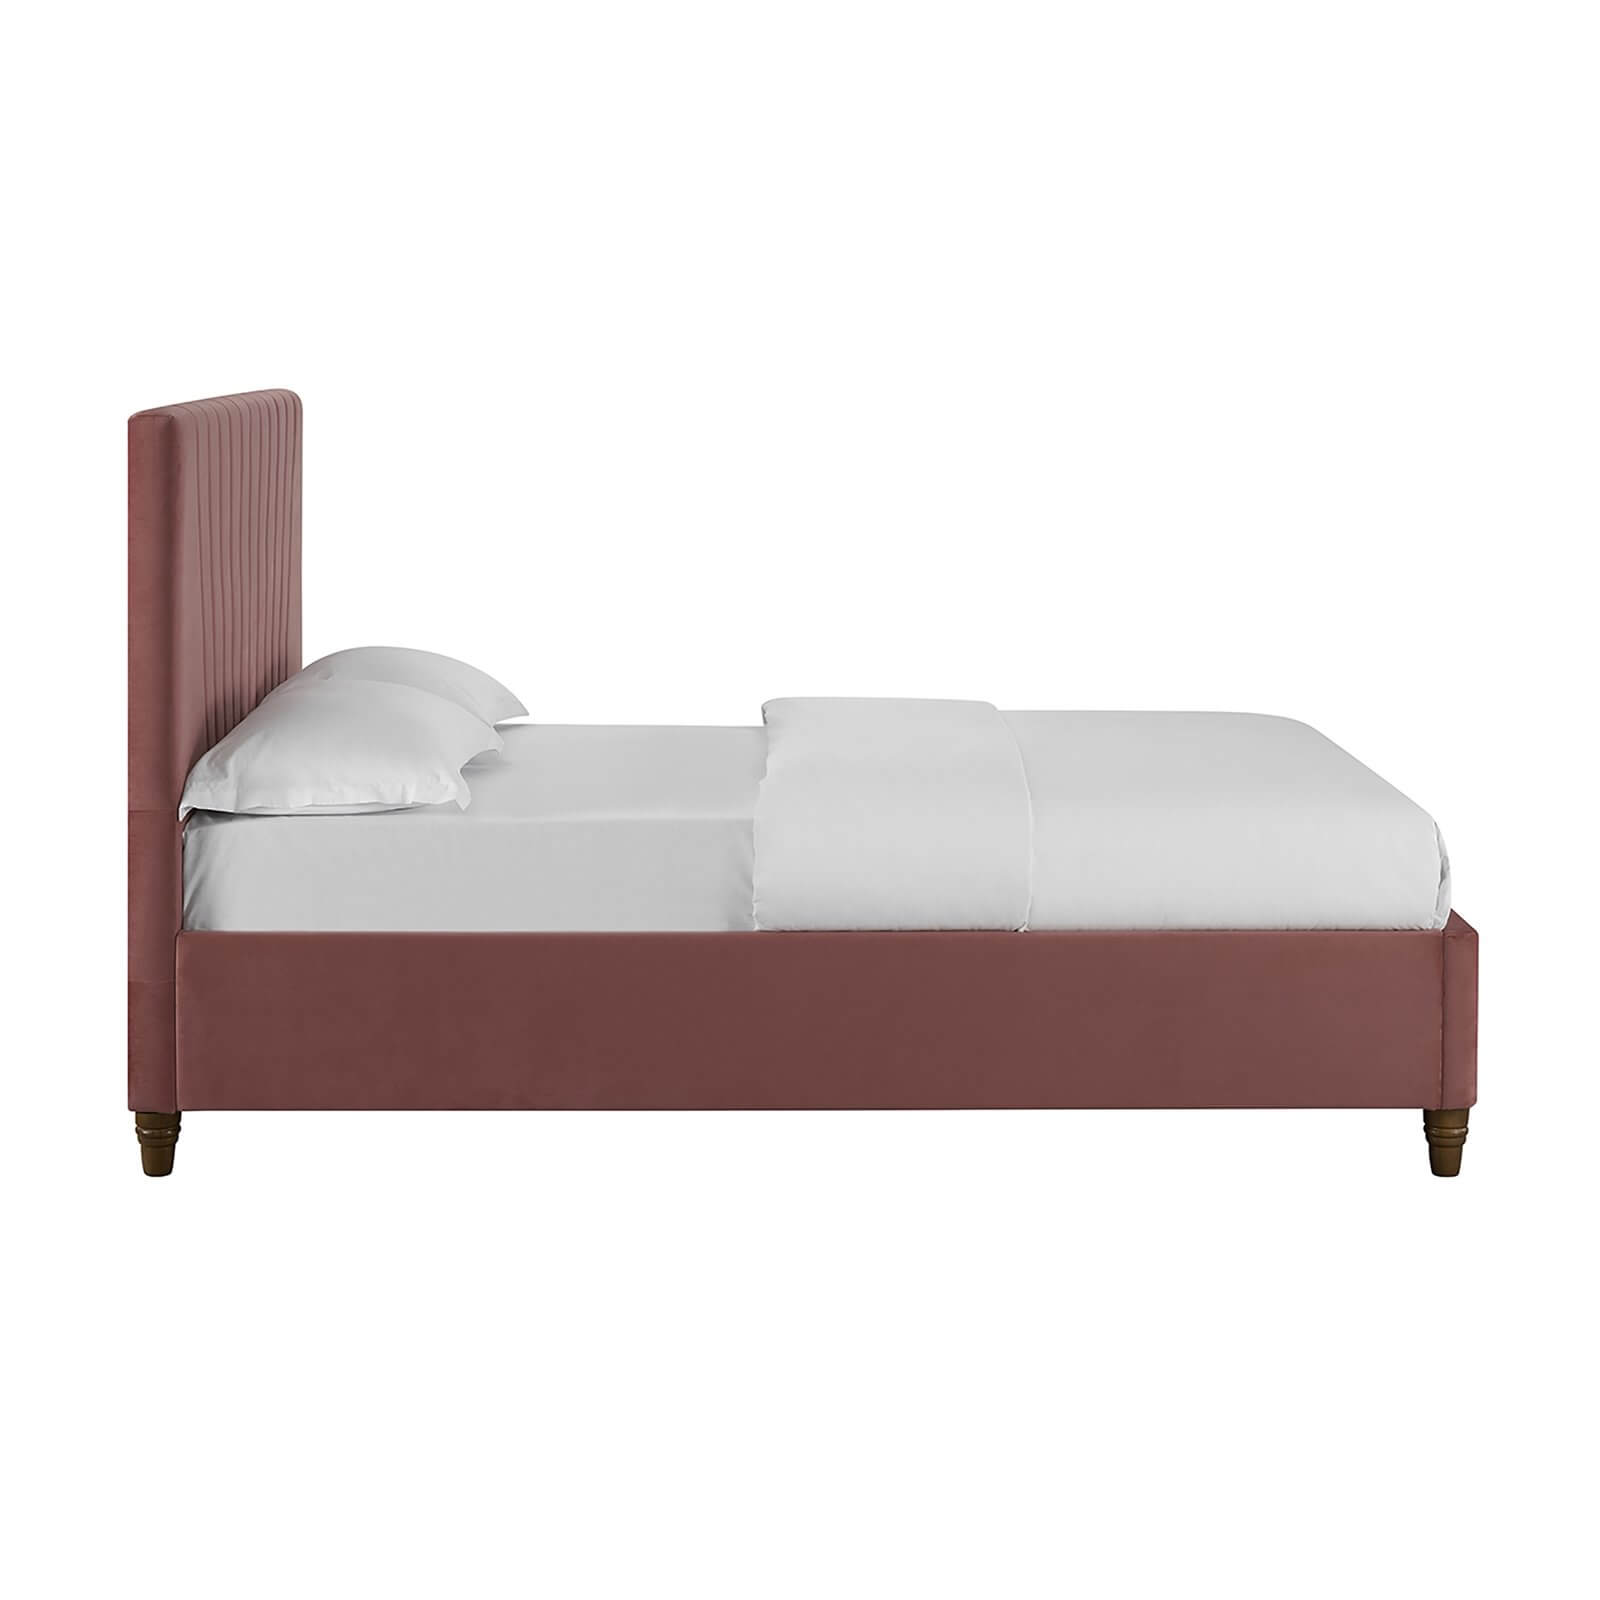 Lexie Velvet Upholstered King Size Bed - Pink